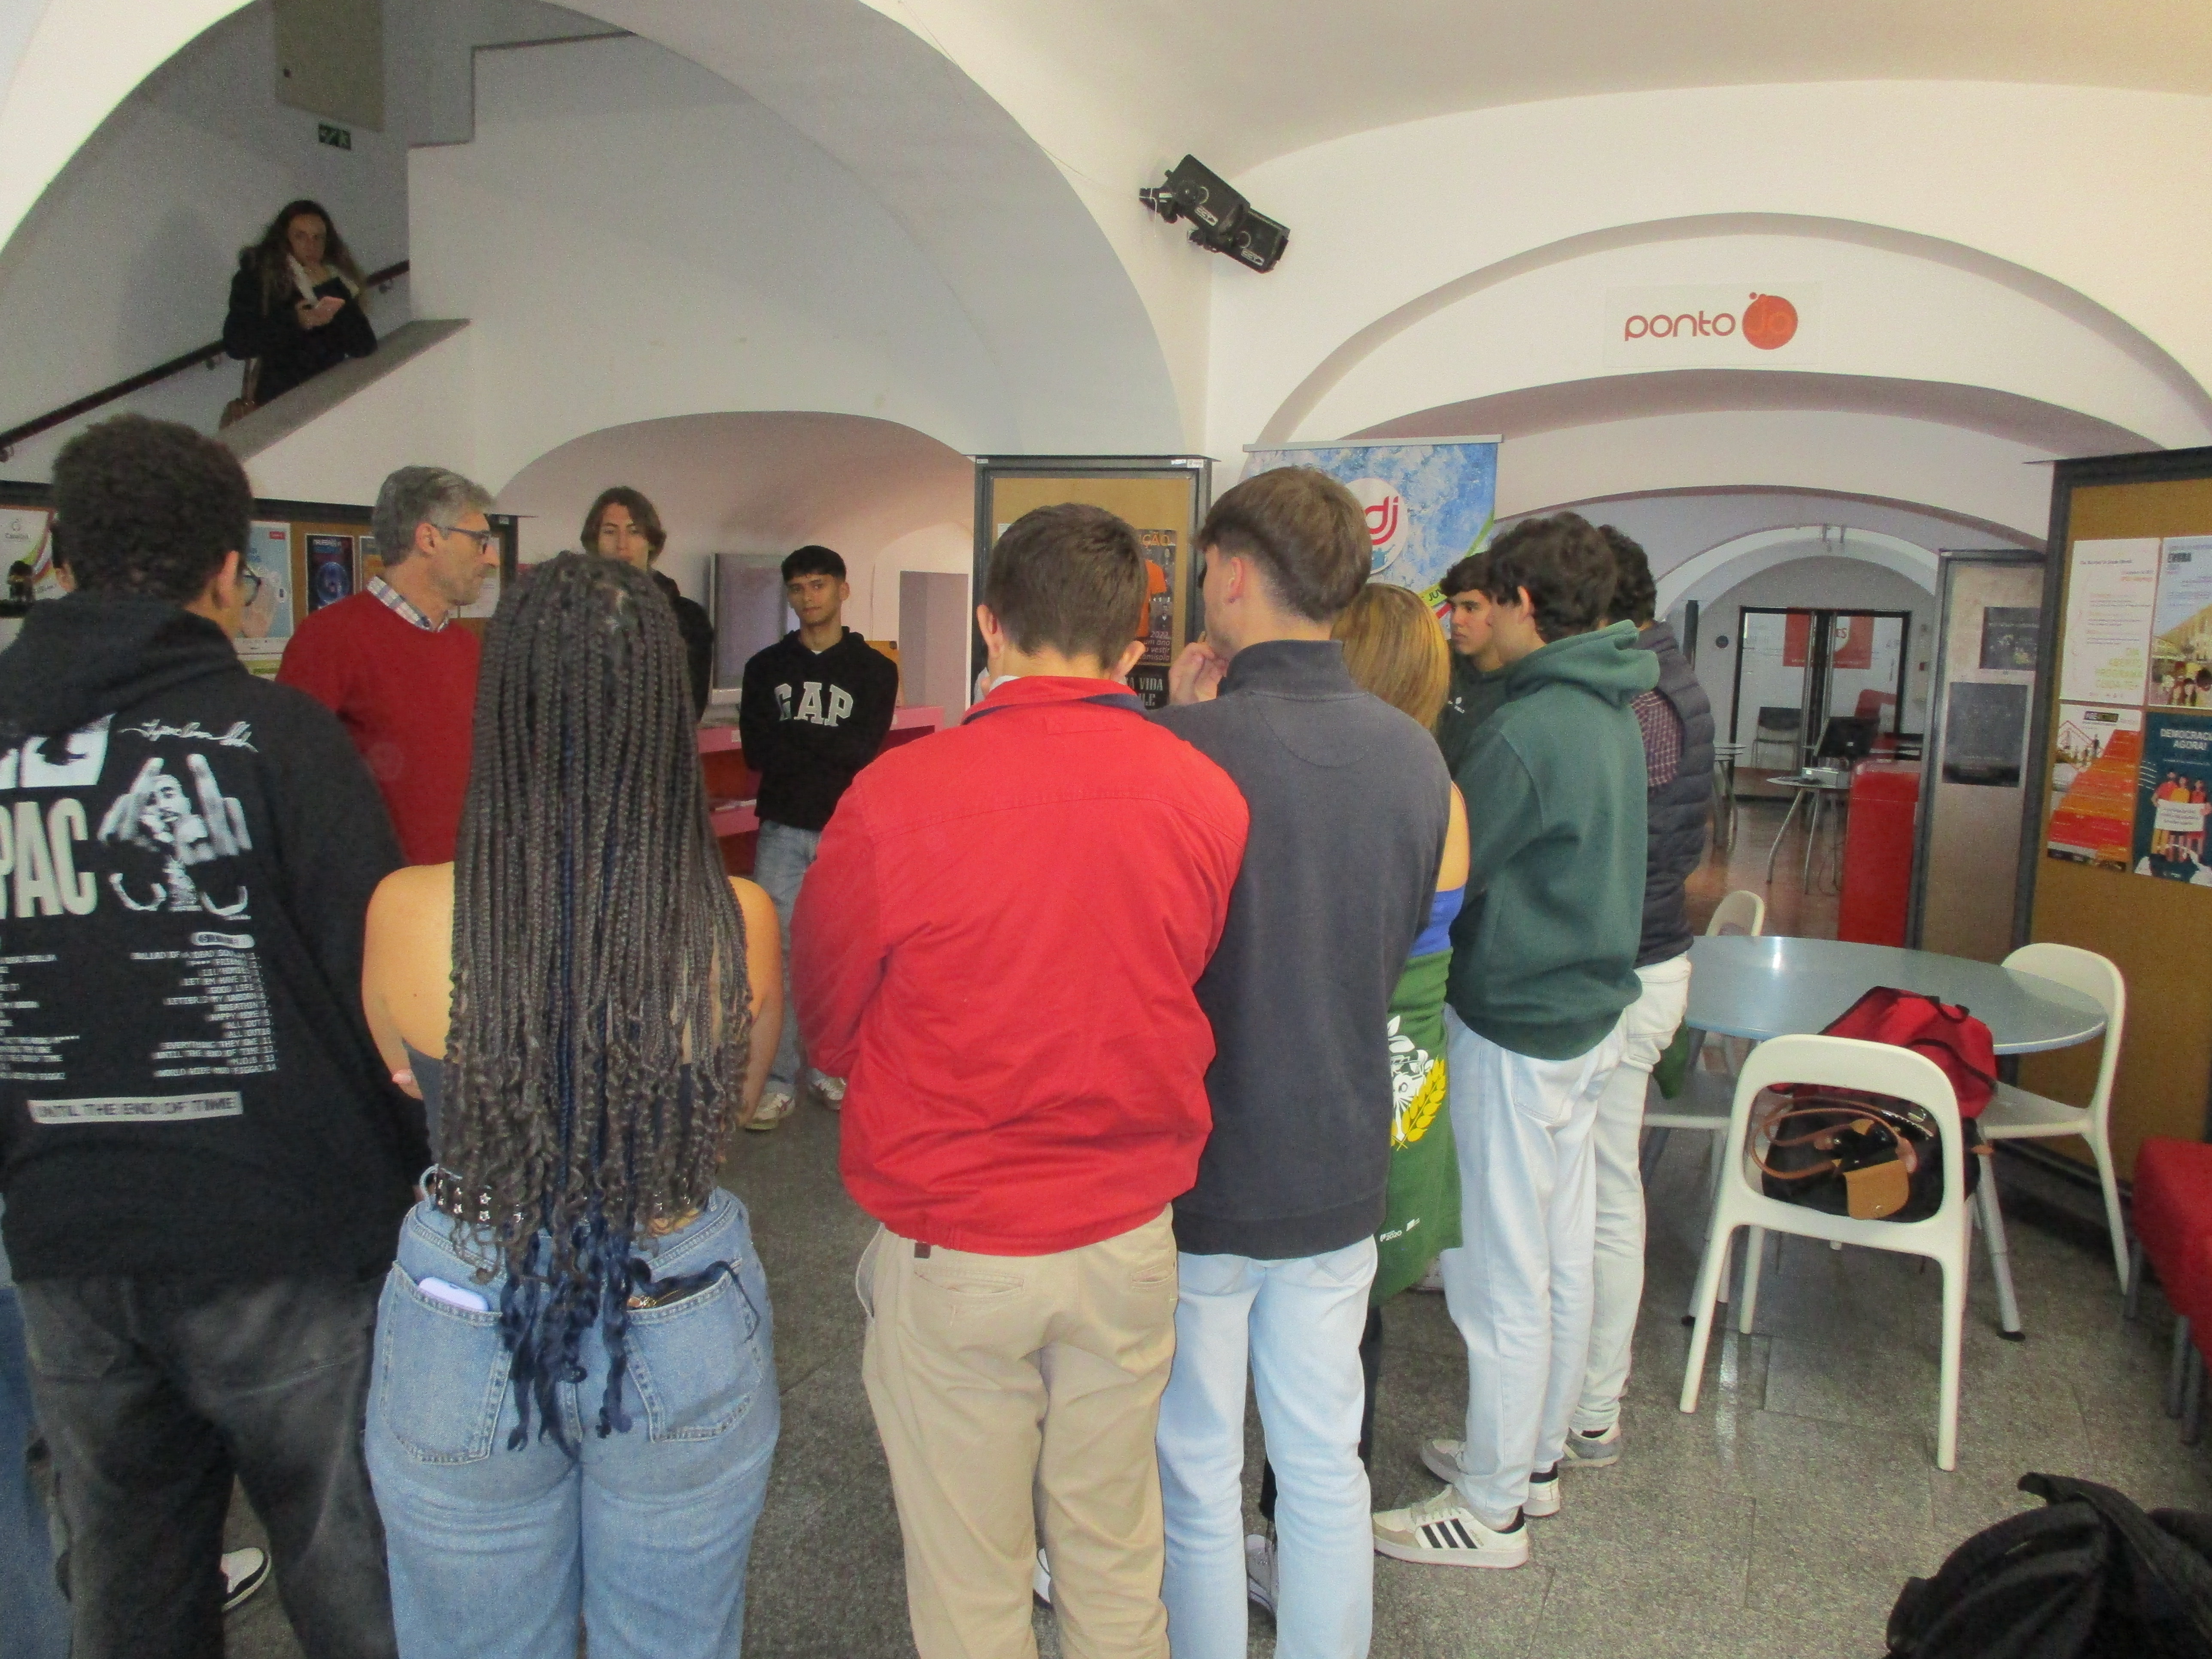 Grupo de alunos da Escola Secundária André de Gouveia, na Loja Ponto JA de Évora, a participarem no Workshop de associativismo, dinamizado pelo técnico do IPDJ de Beja, Pedro Torrão.